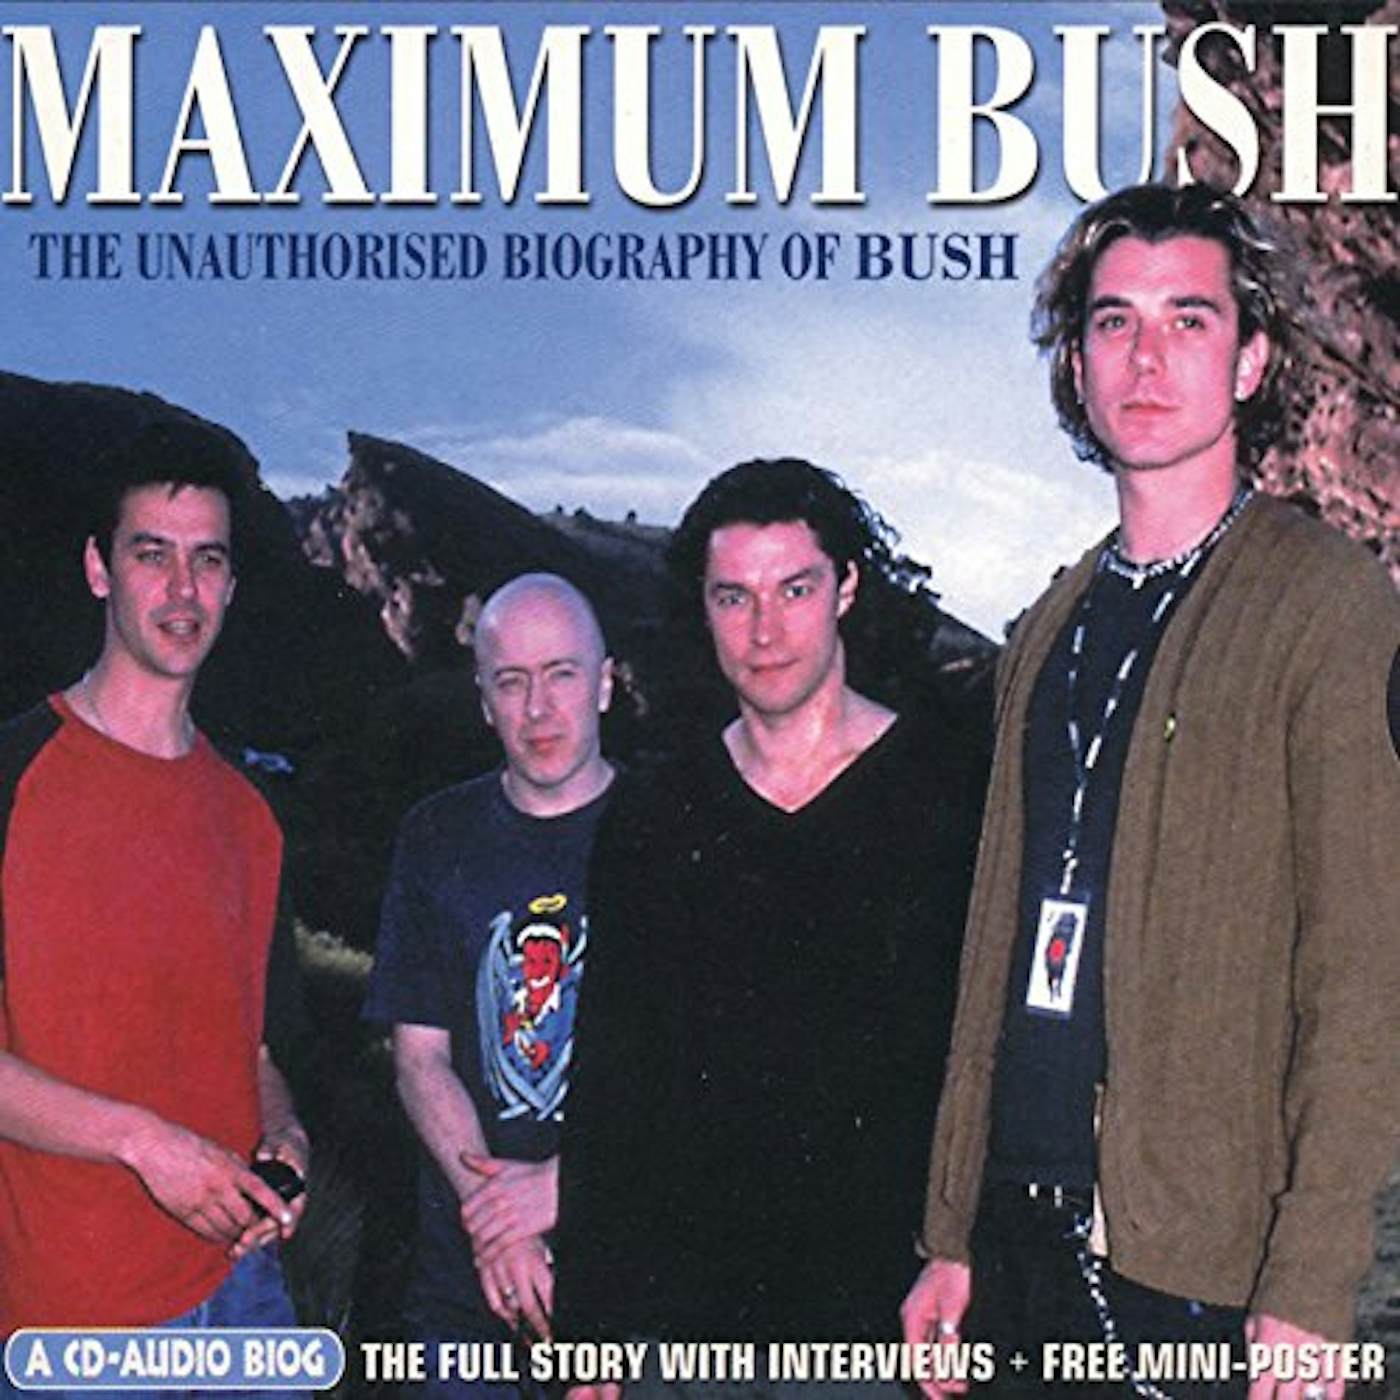 MAXIMUM BUSH CD